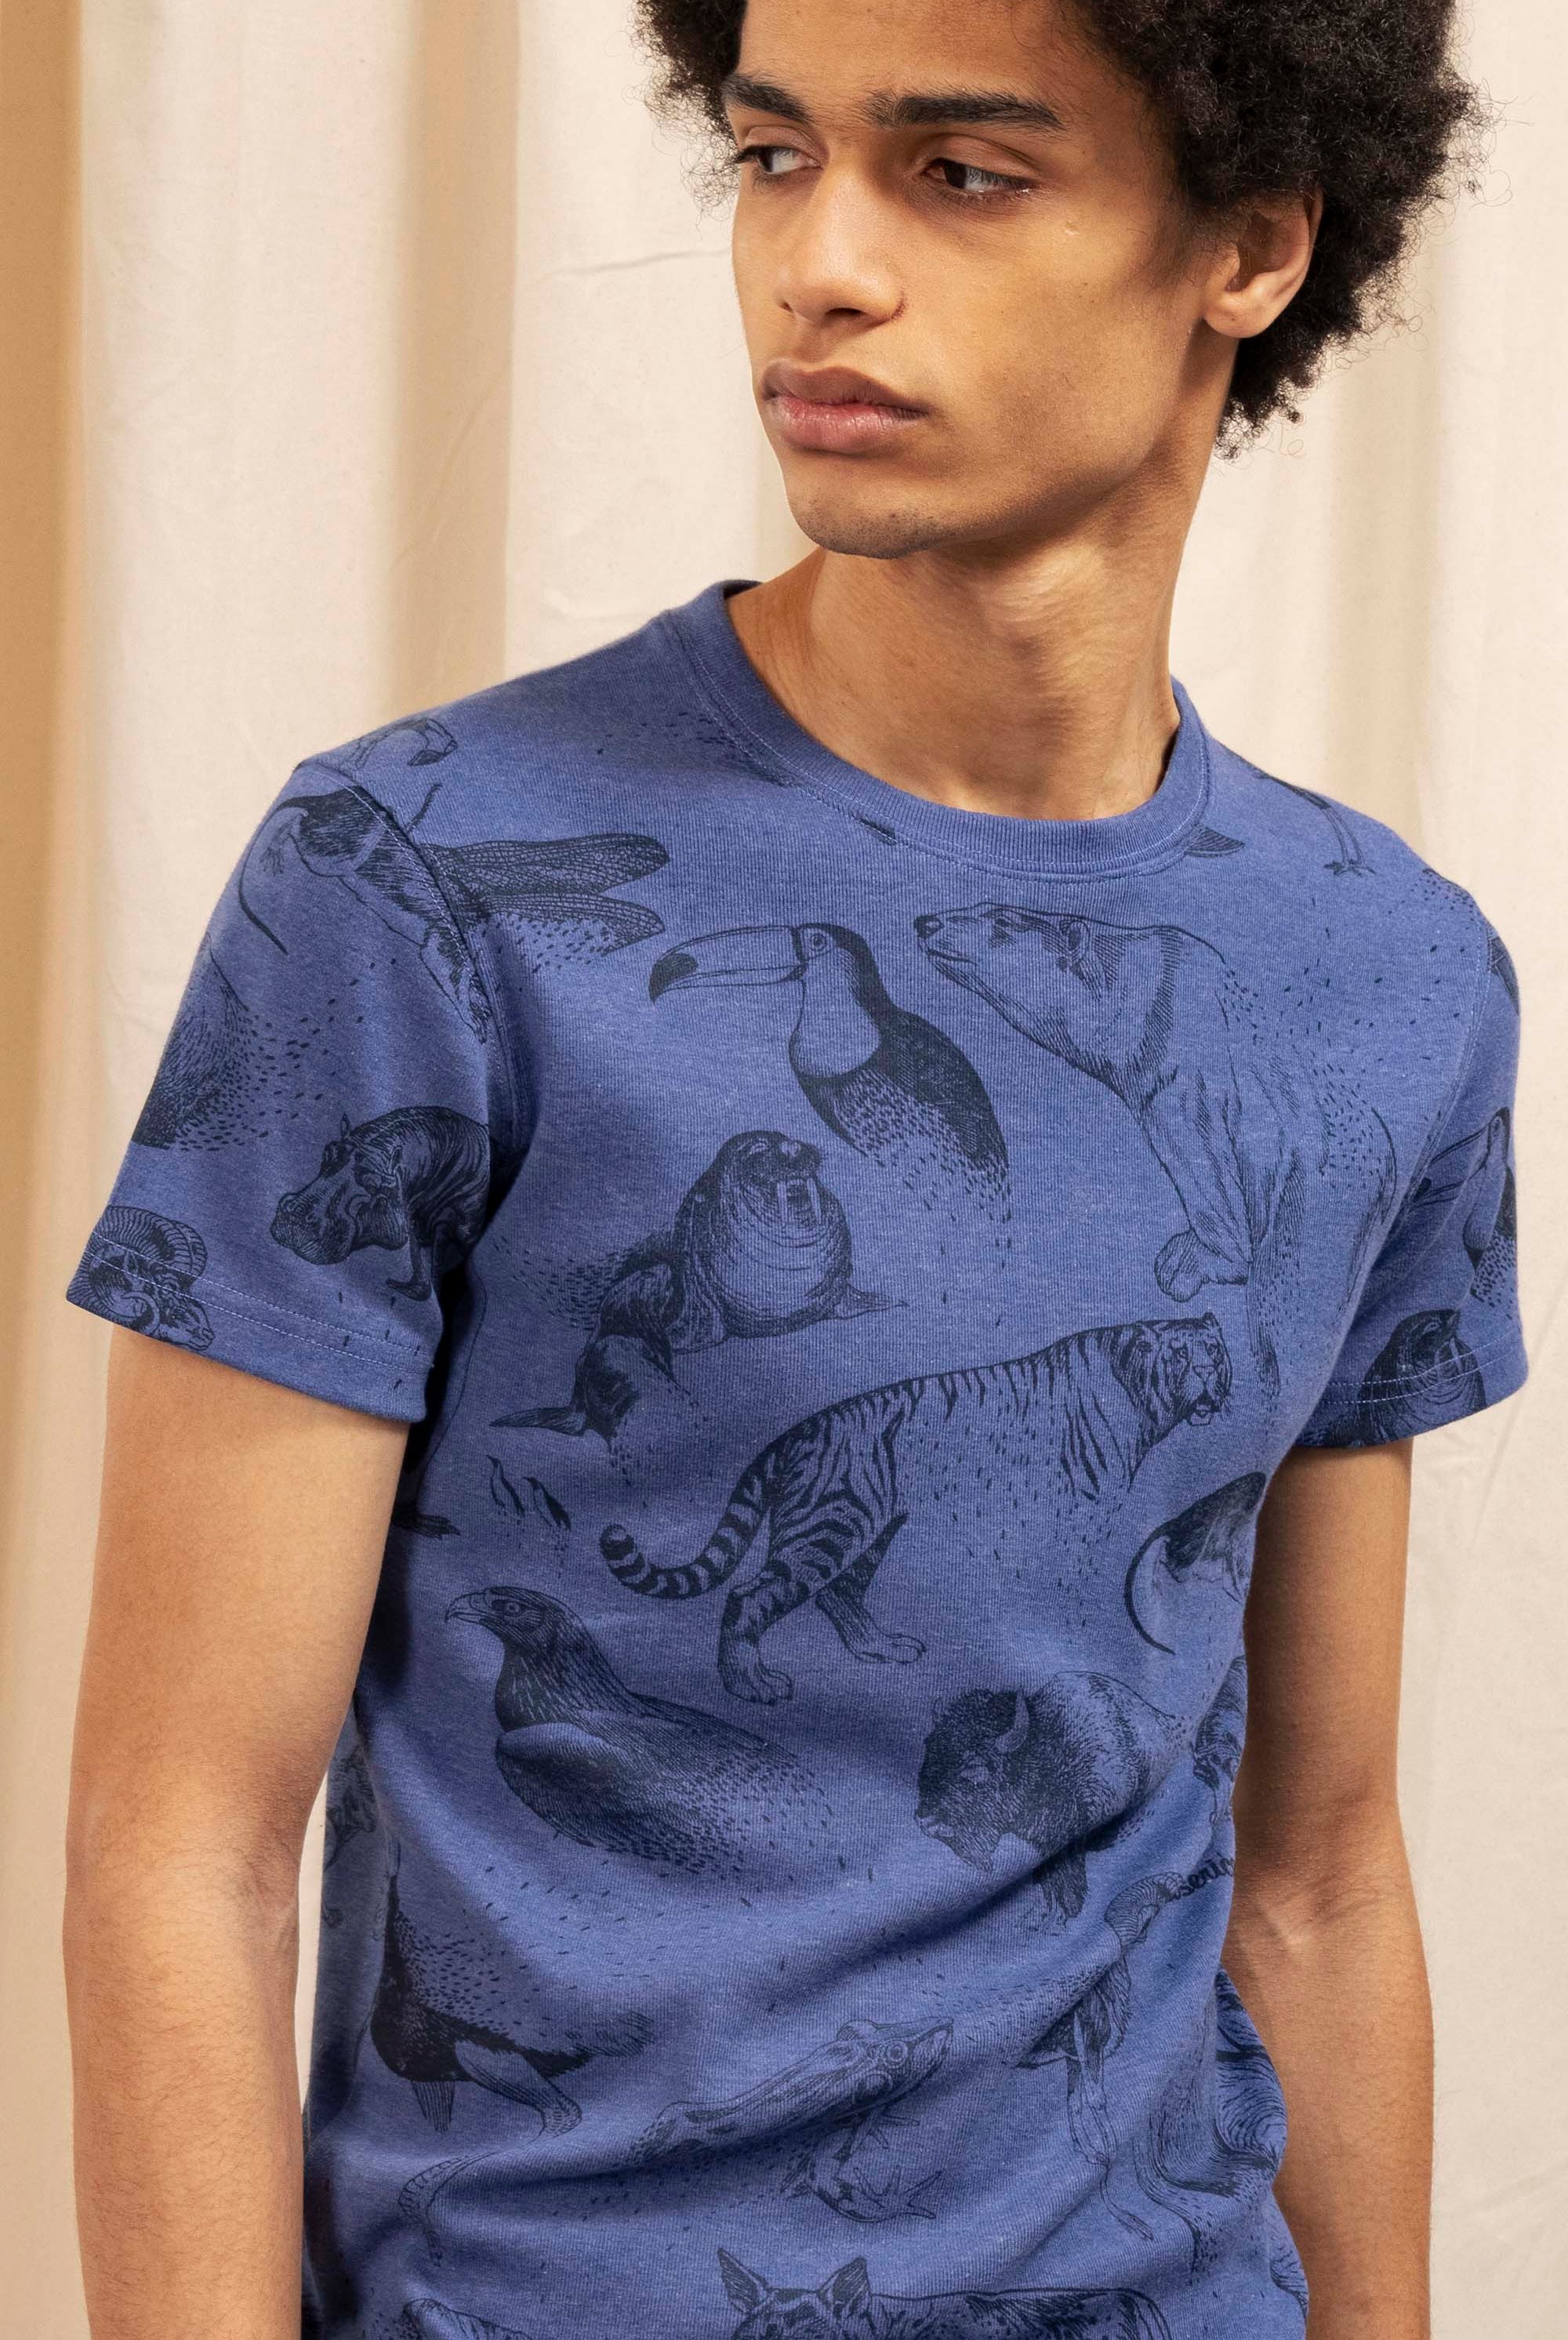 T-Shirt Carta Animales Desaparicion Bleu Acier t-shirts pour homme unis ou imprimés en coton agréable à porter